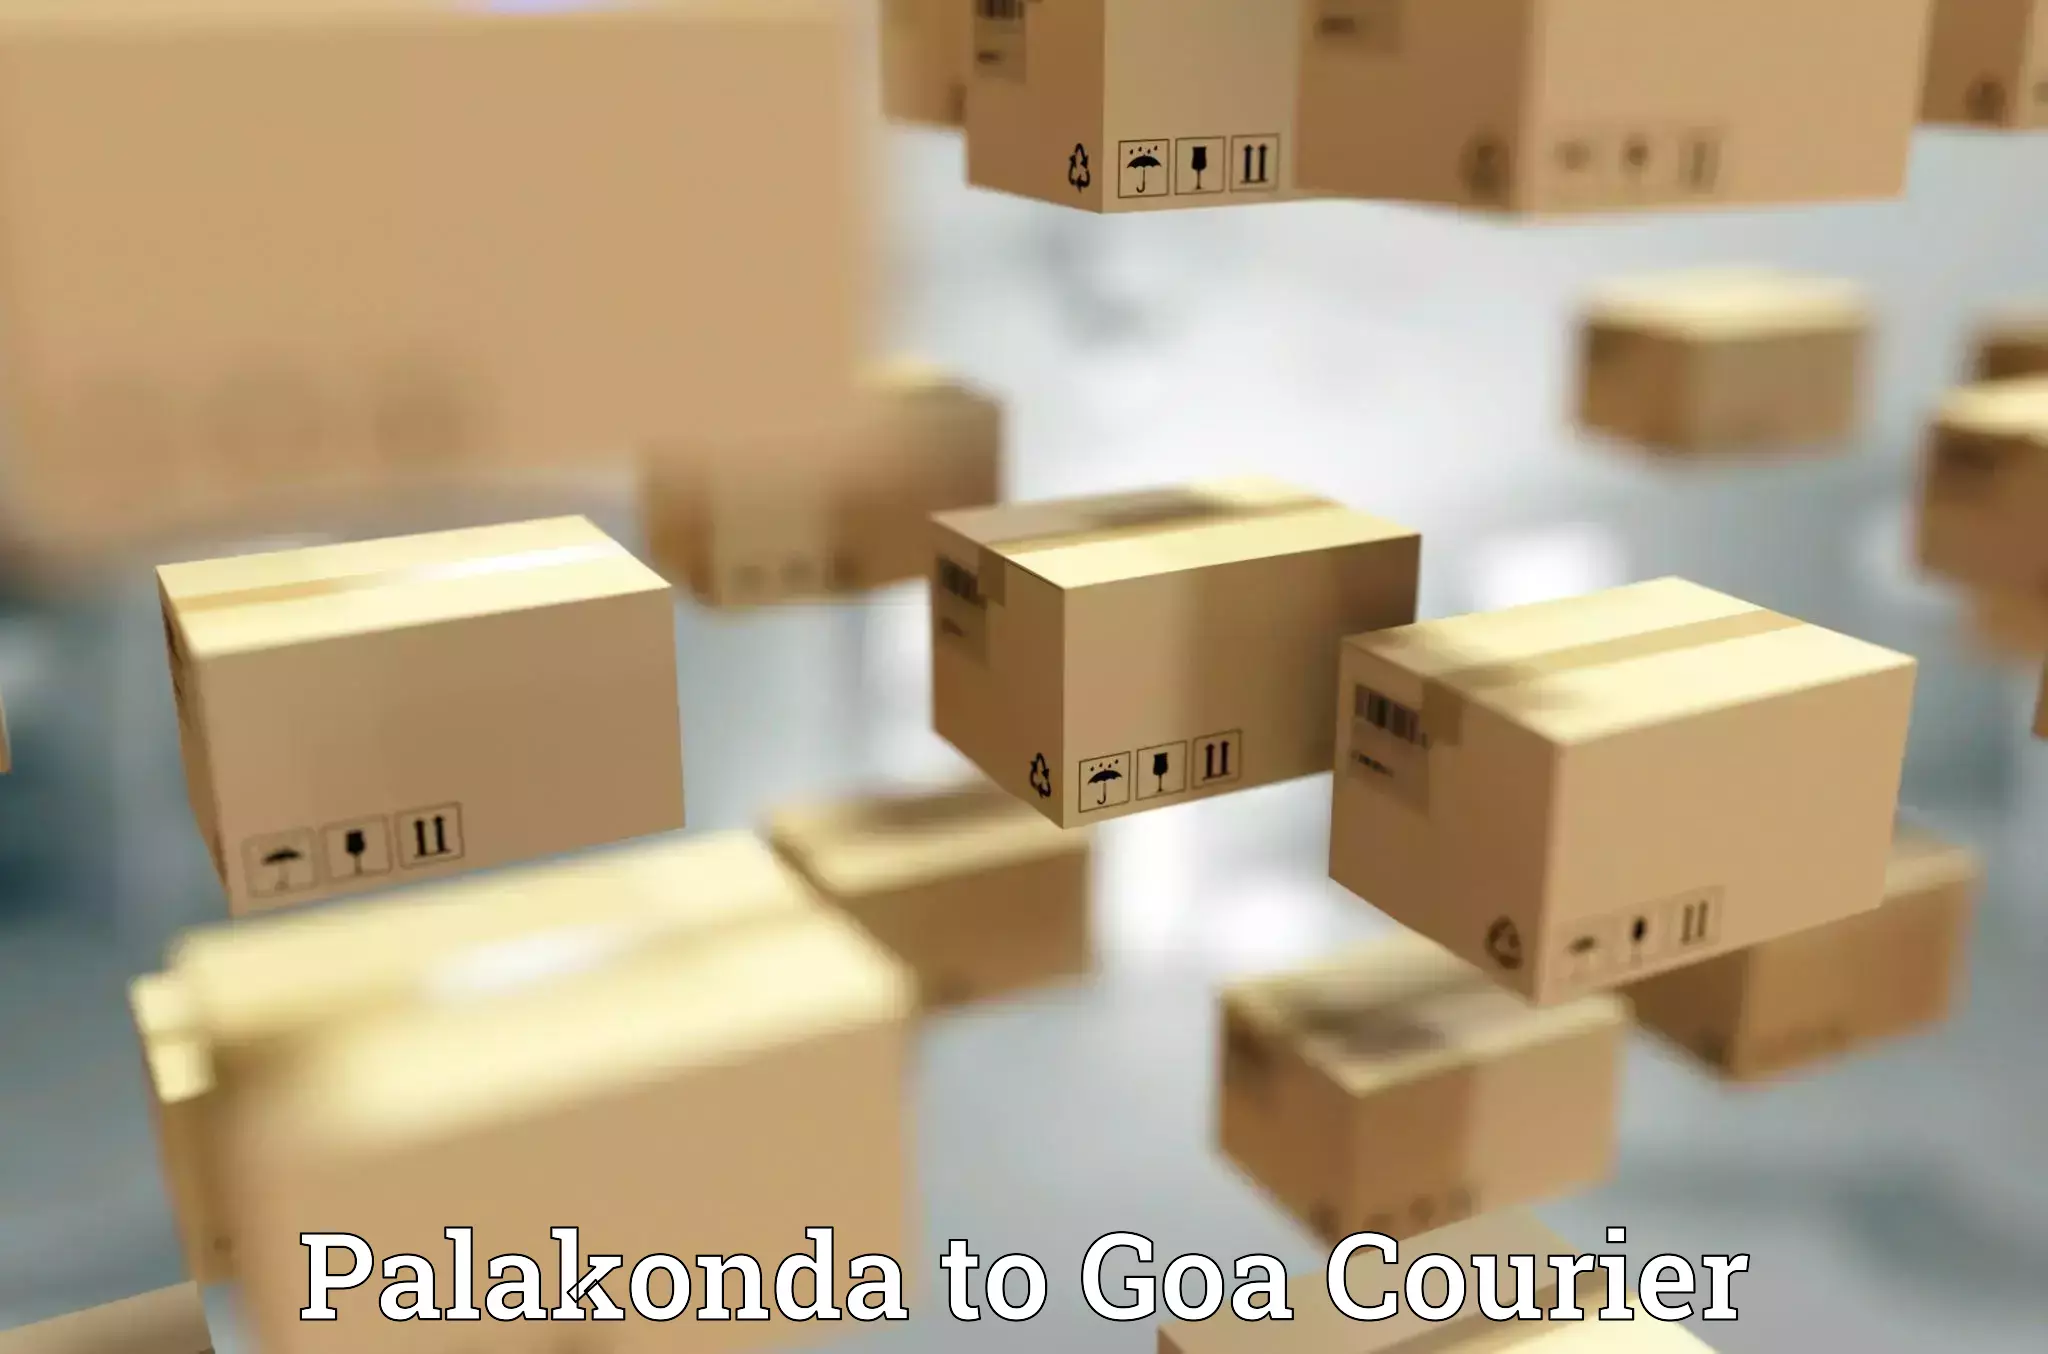 Modern courier technology Palakonda to Panaji